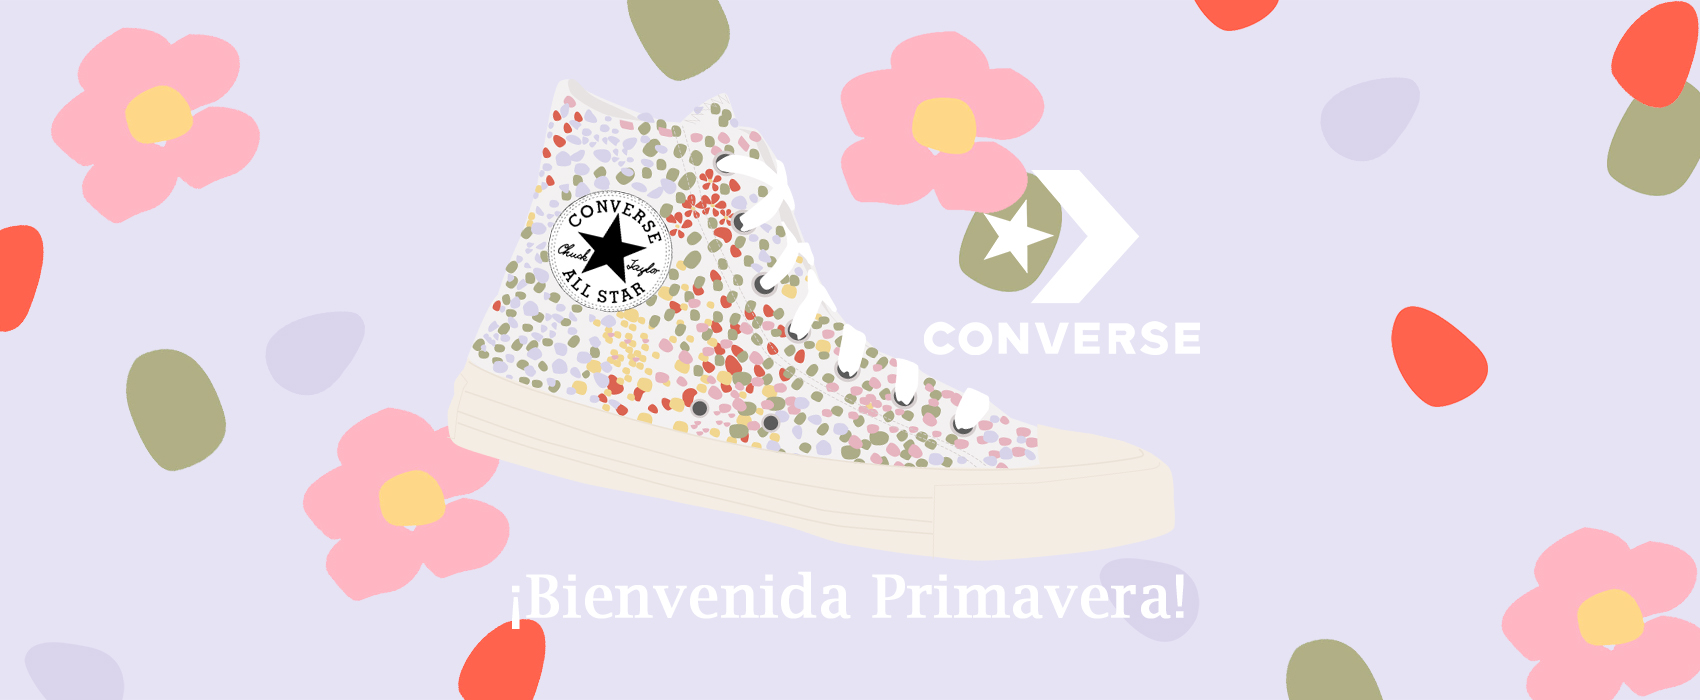 Zapatillas marca Converse.